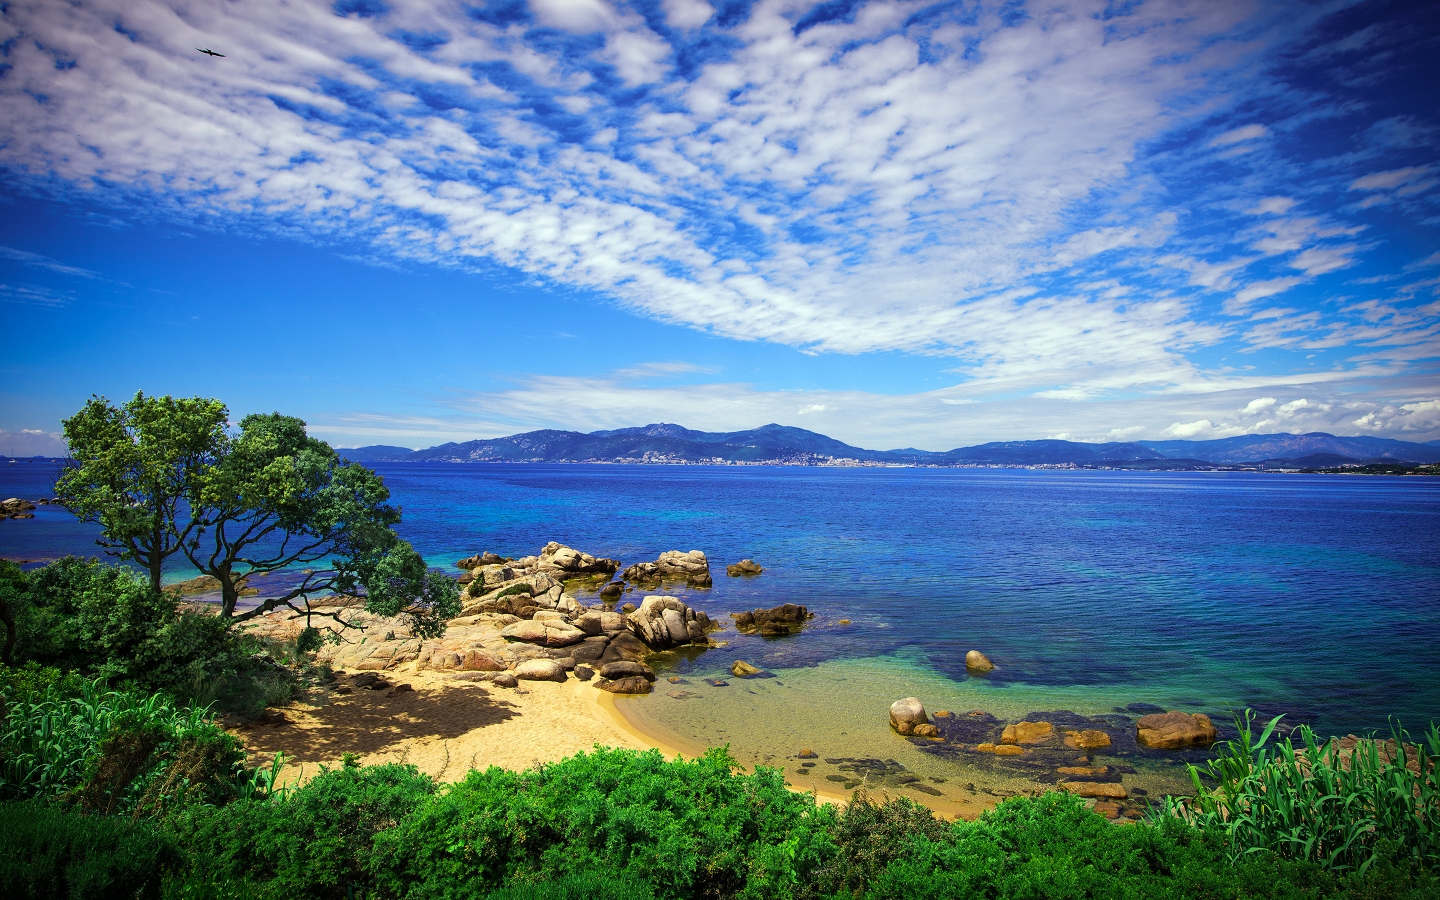 Coast of Porticcio for 1440 x 900 widescreen resolution